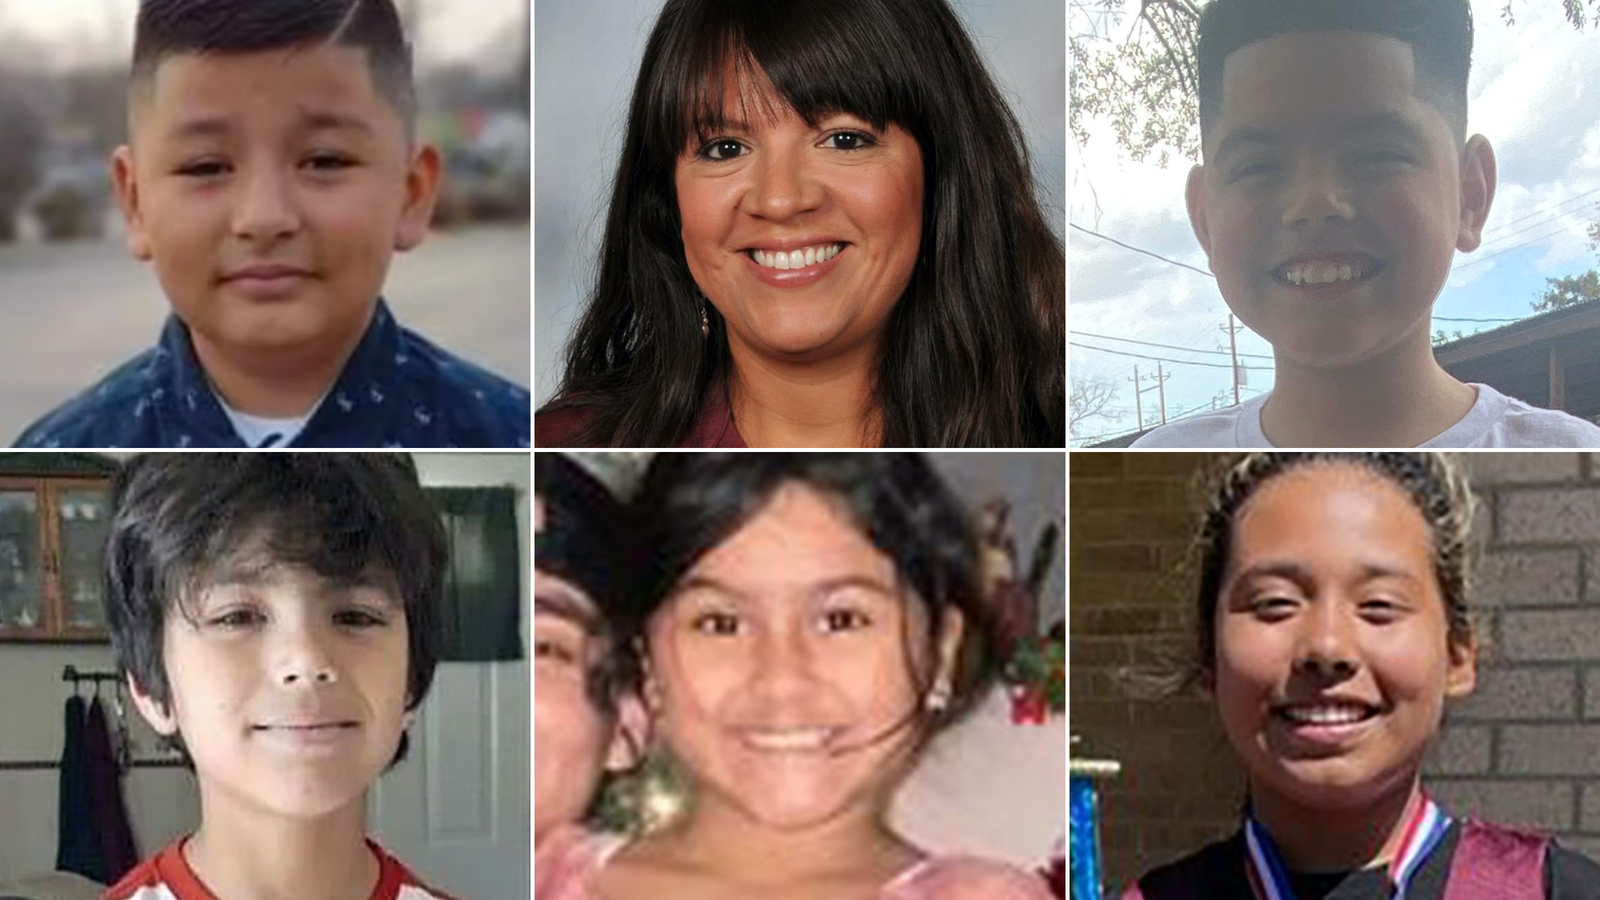 Masacre en Uvalde, Texas: fotos de todas las víctimas